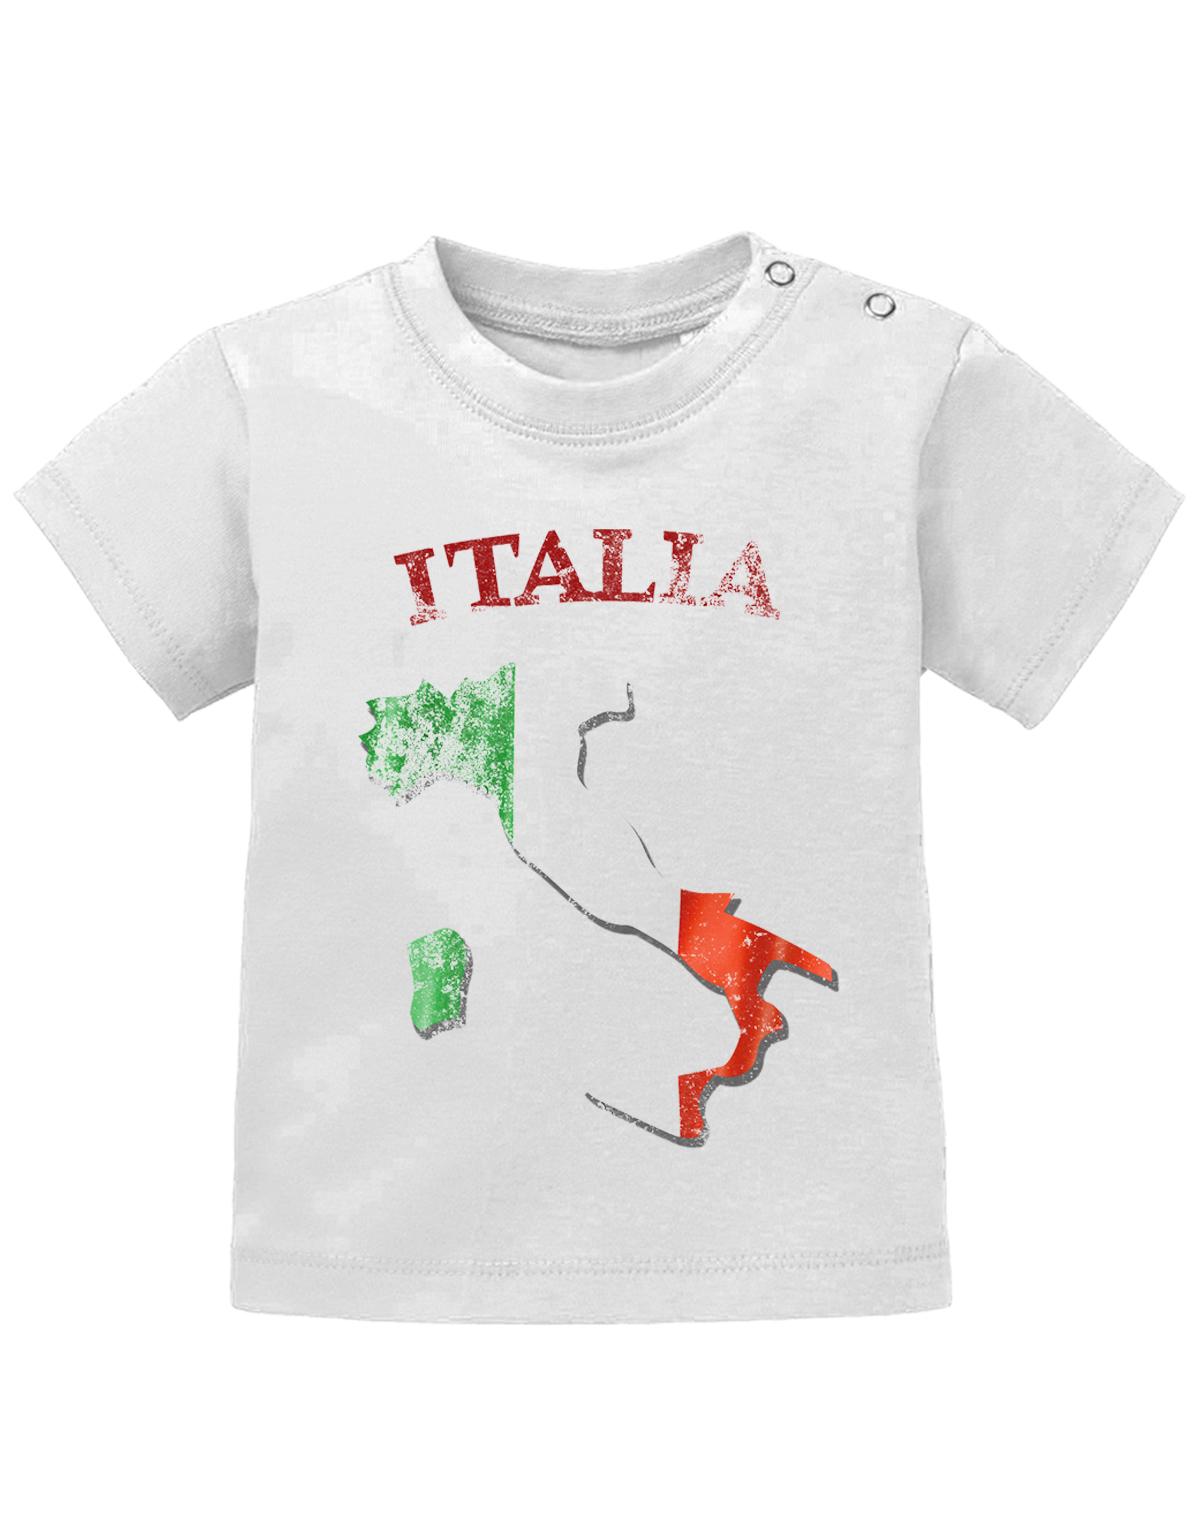 Italien T Shirt für Junge und Mädchen. Italiens Grundriss Landkarte mit Flagge und Italia als Schriftzug im Grunge Design.